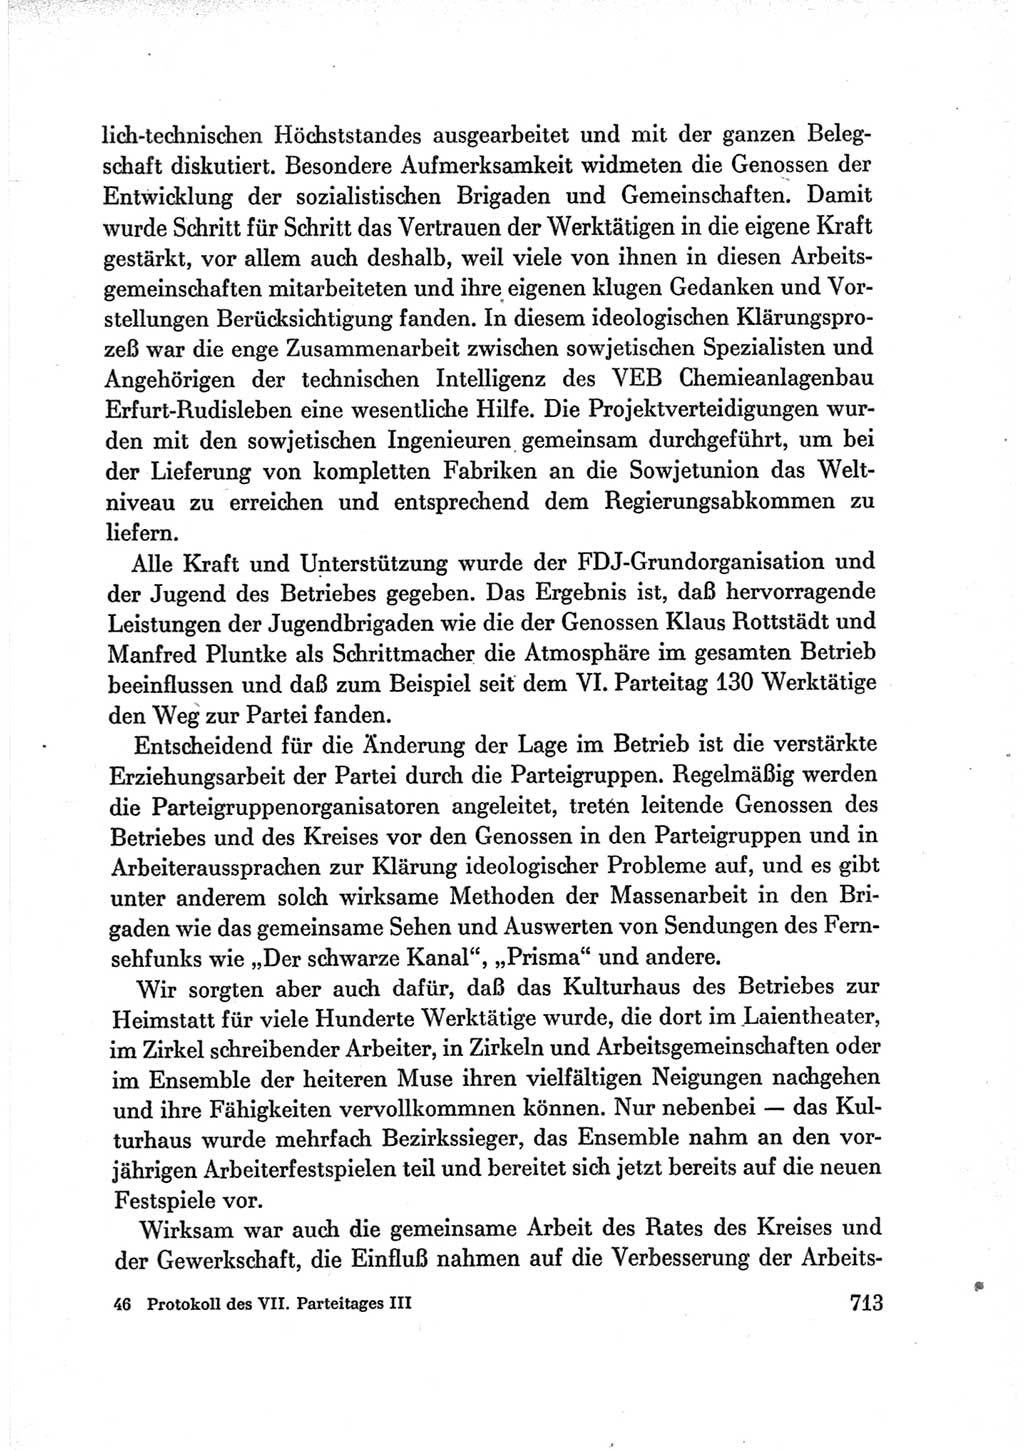 Protokoll der Verhandlungen des Ⅶ. Parteitages der Sozialistischen Einheitspartei Deutschlands (SED) [Deutsche Demokratische Republik (DDR)] 1967, Band Ⅲ, Seite 713 (Prot. Verh. Ⅶ. PT SED DDR 1967, Bd. Ⅲ, S. 713)